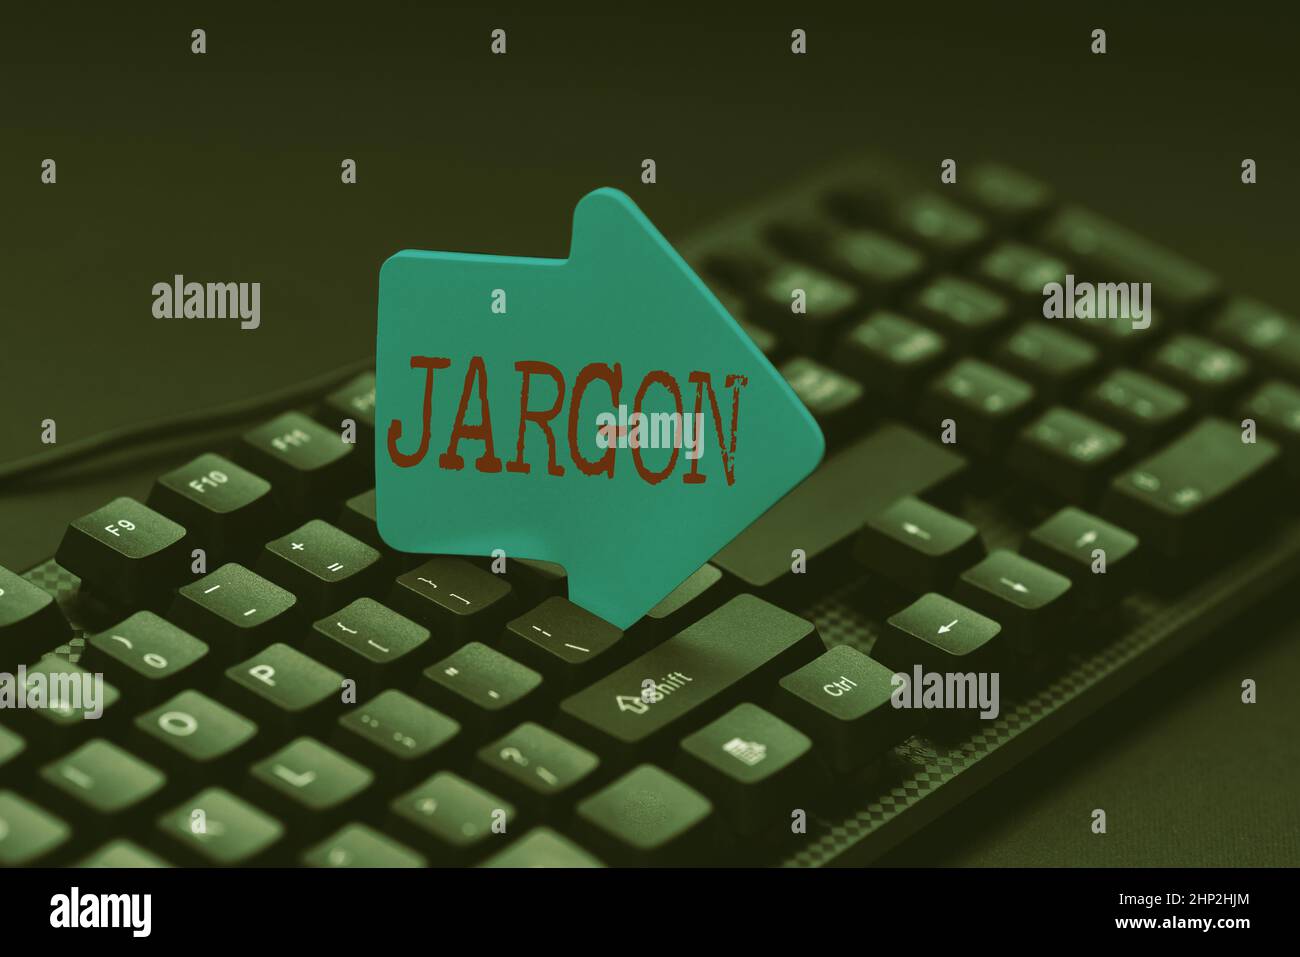 Handschrift Zeichen Jargon, Business Concept spezielle Wörter oder Ausdrücke, die von einem bestimmten Beruf verwendet werden Word Processing Program Ideen, loggen Sie sich ein Stockfoto